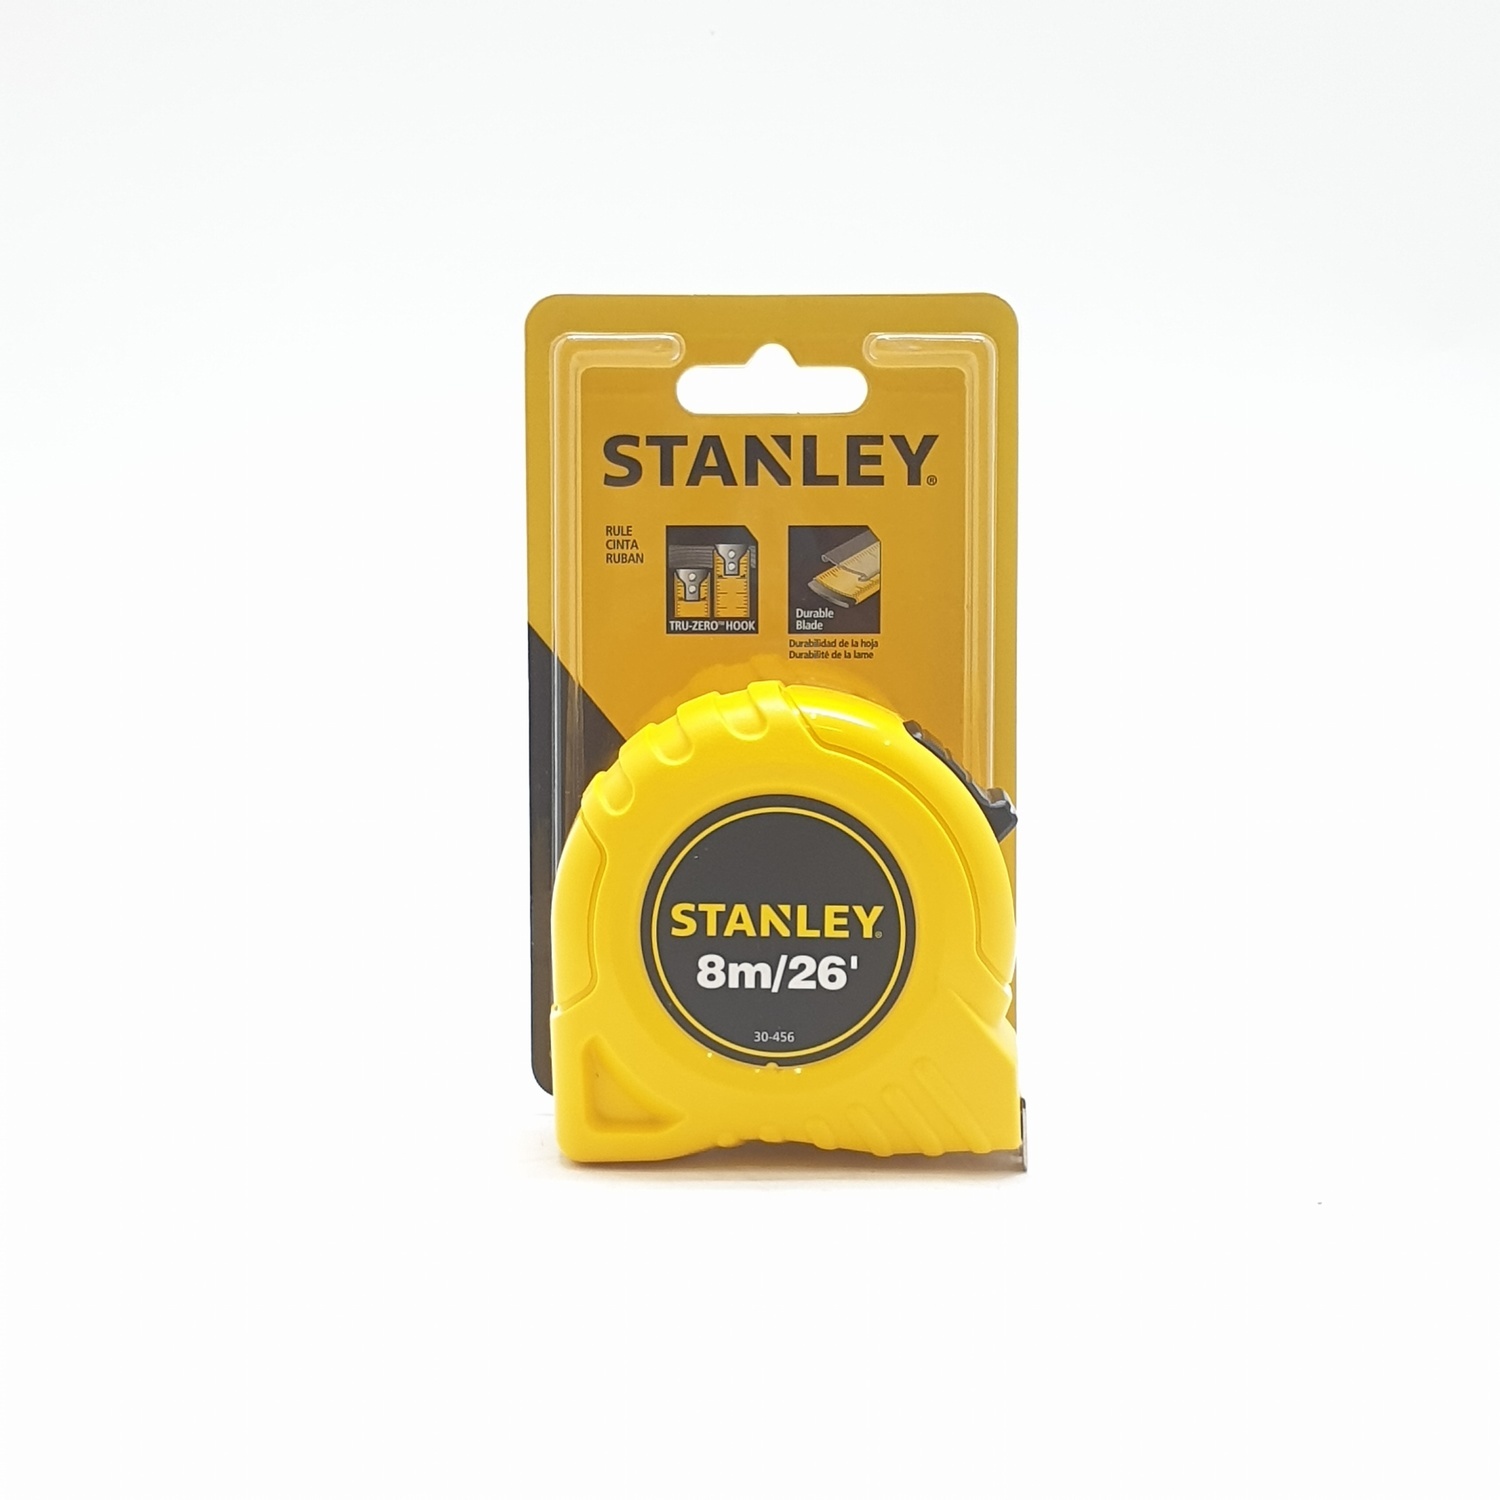 Stanley Tape Measures Global (30-496N)